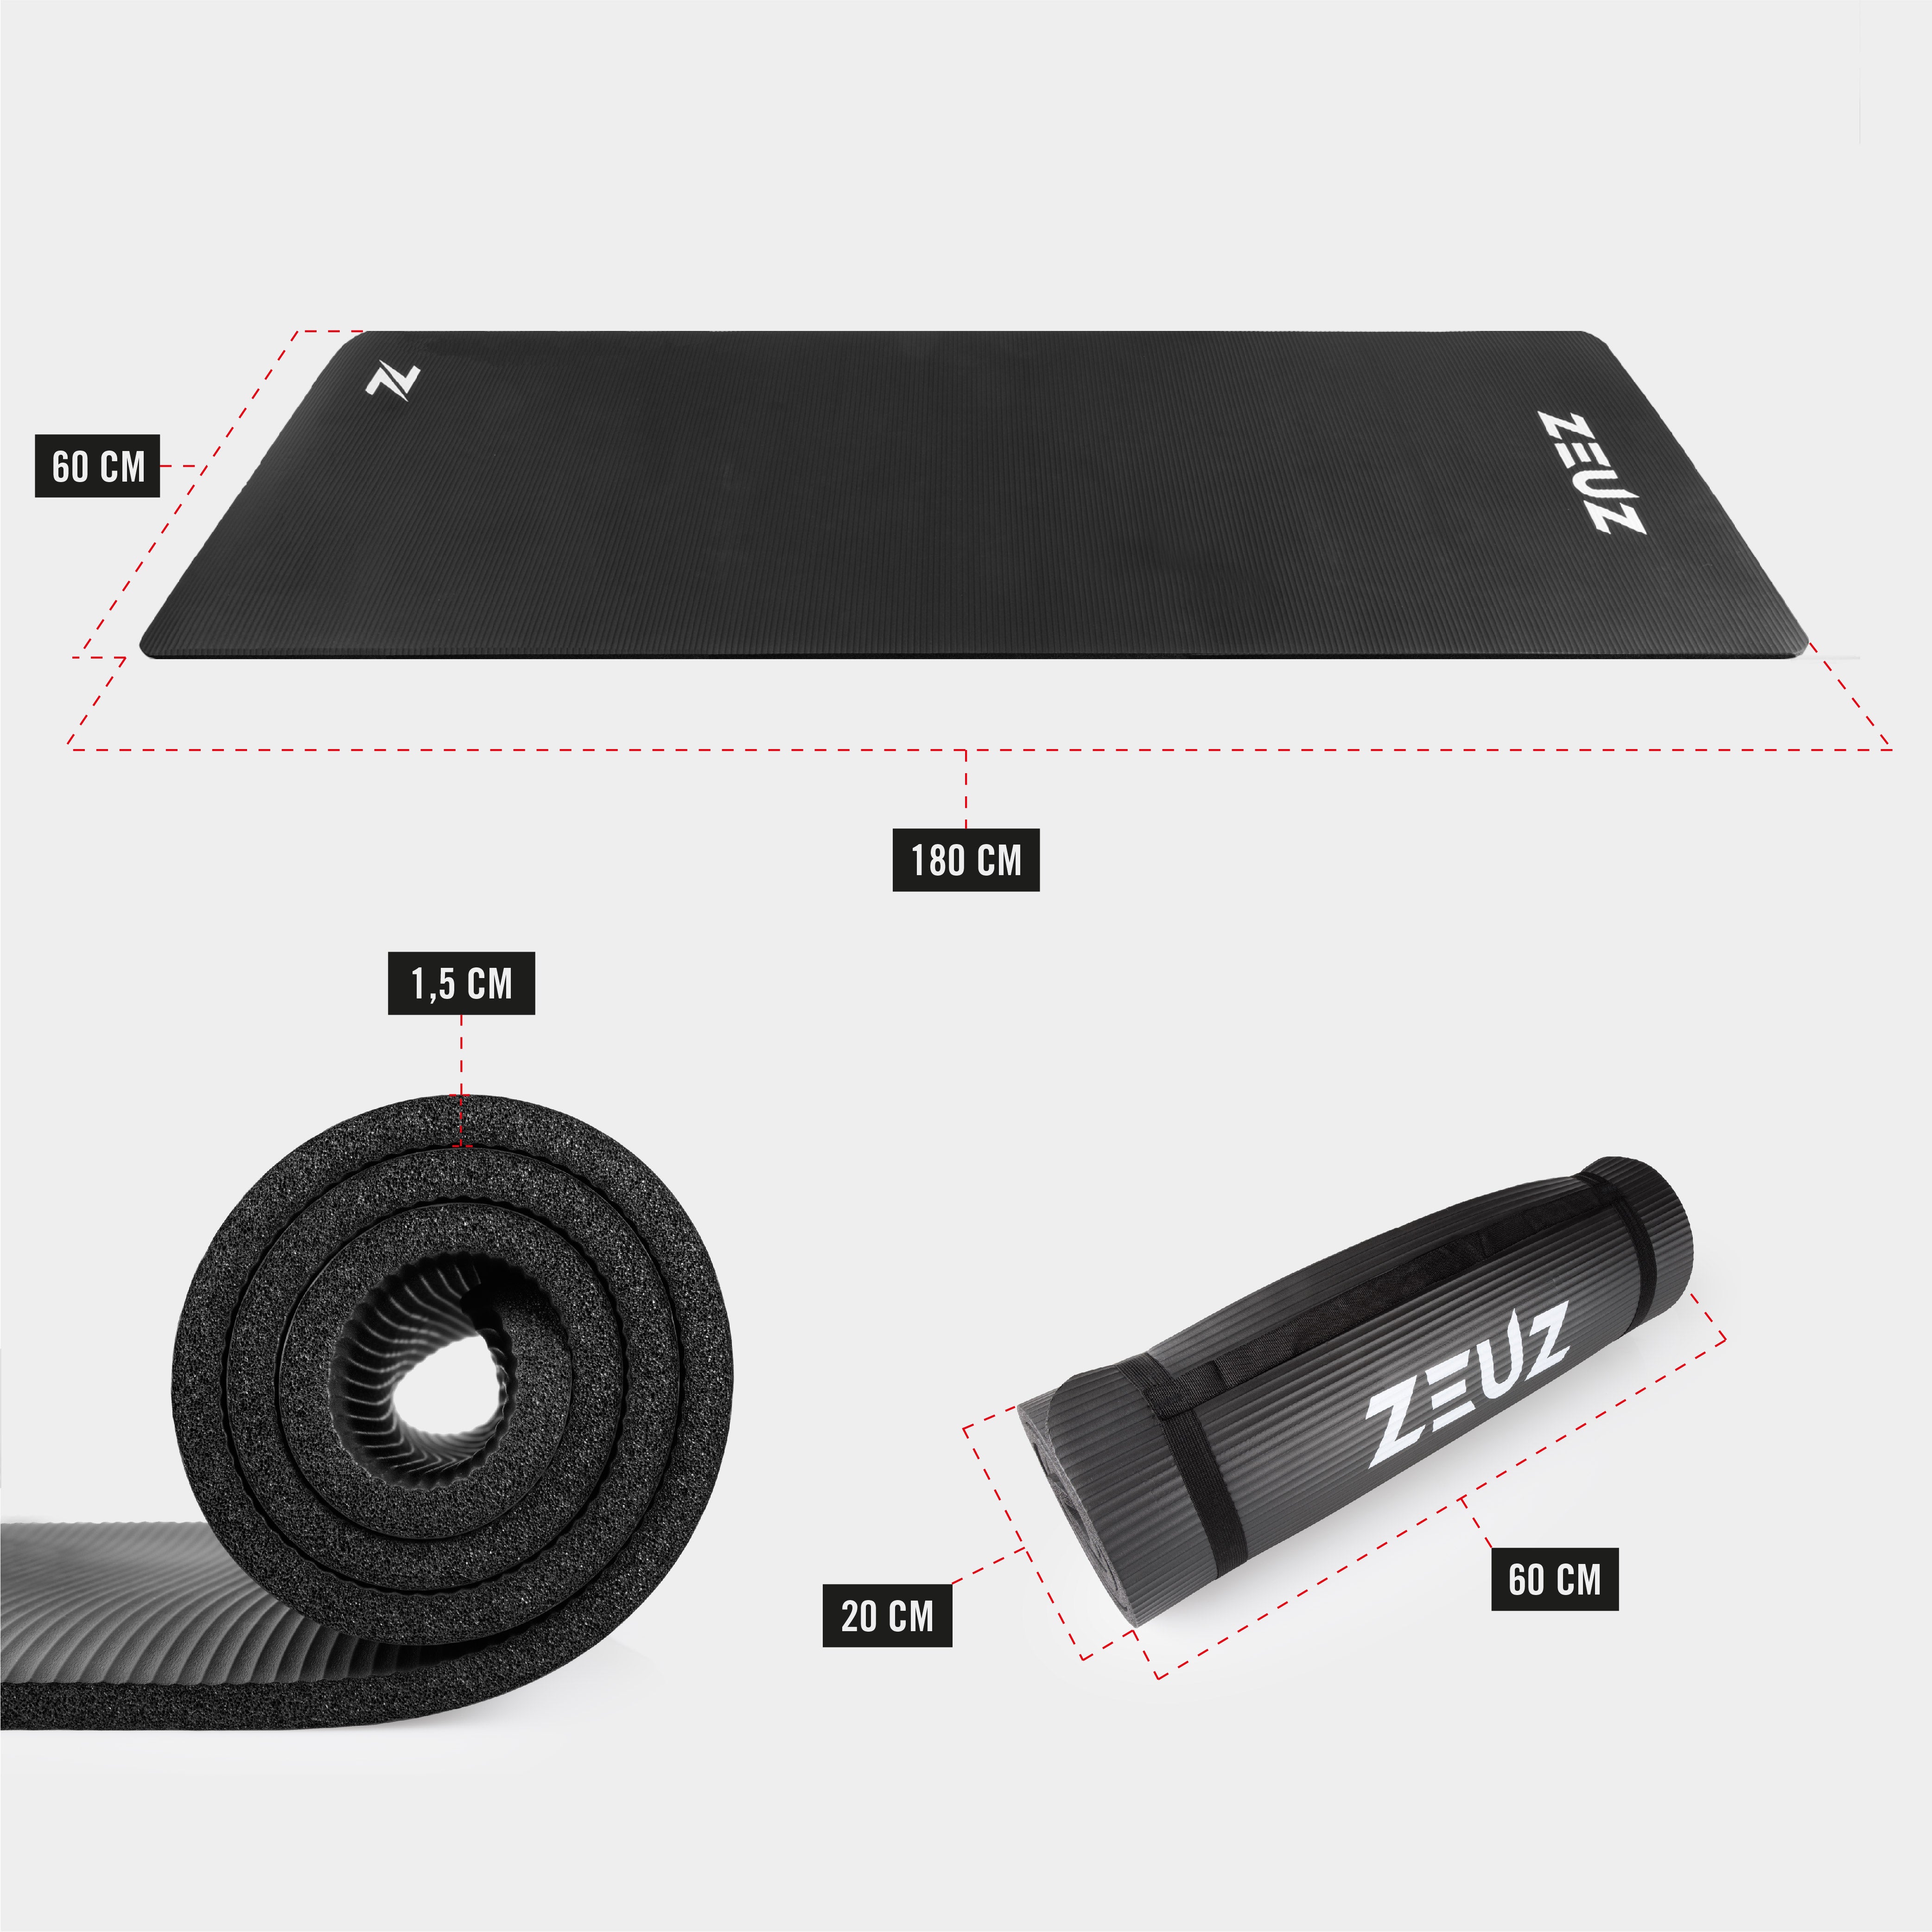 ZEUZ Yoga, Fitness, Sport Mat 180 x 60 x 1,5 CM - Incl. Carrier Bag - Black